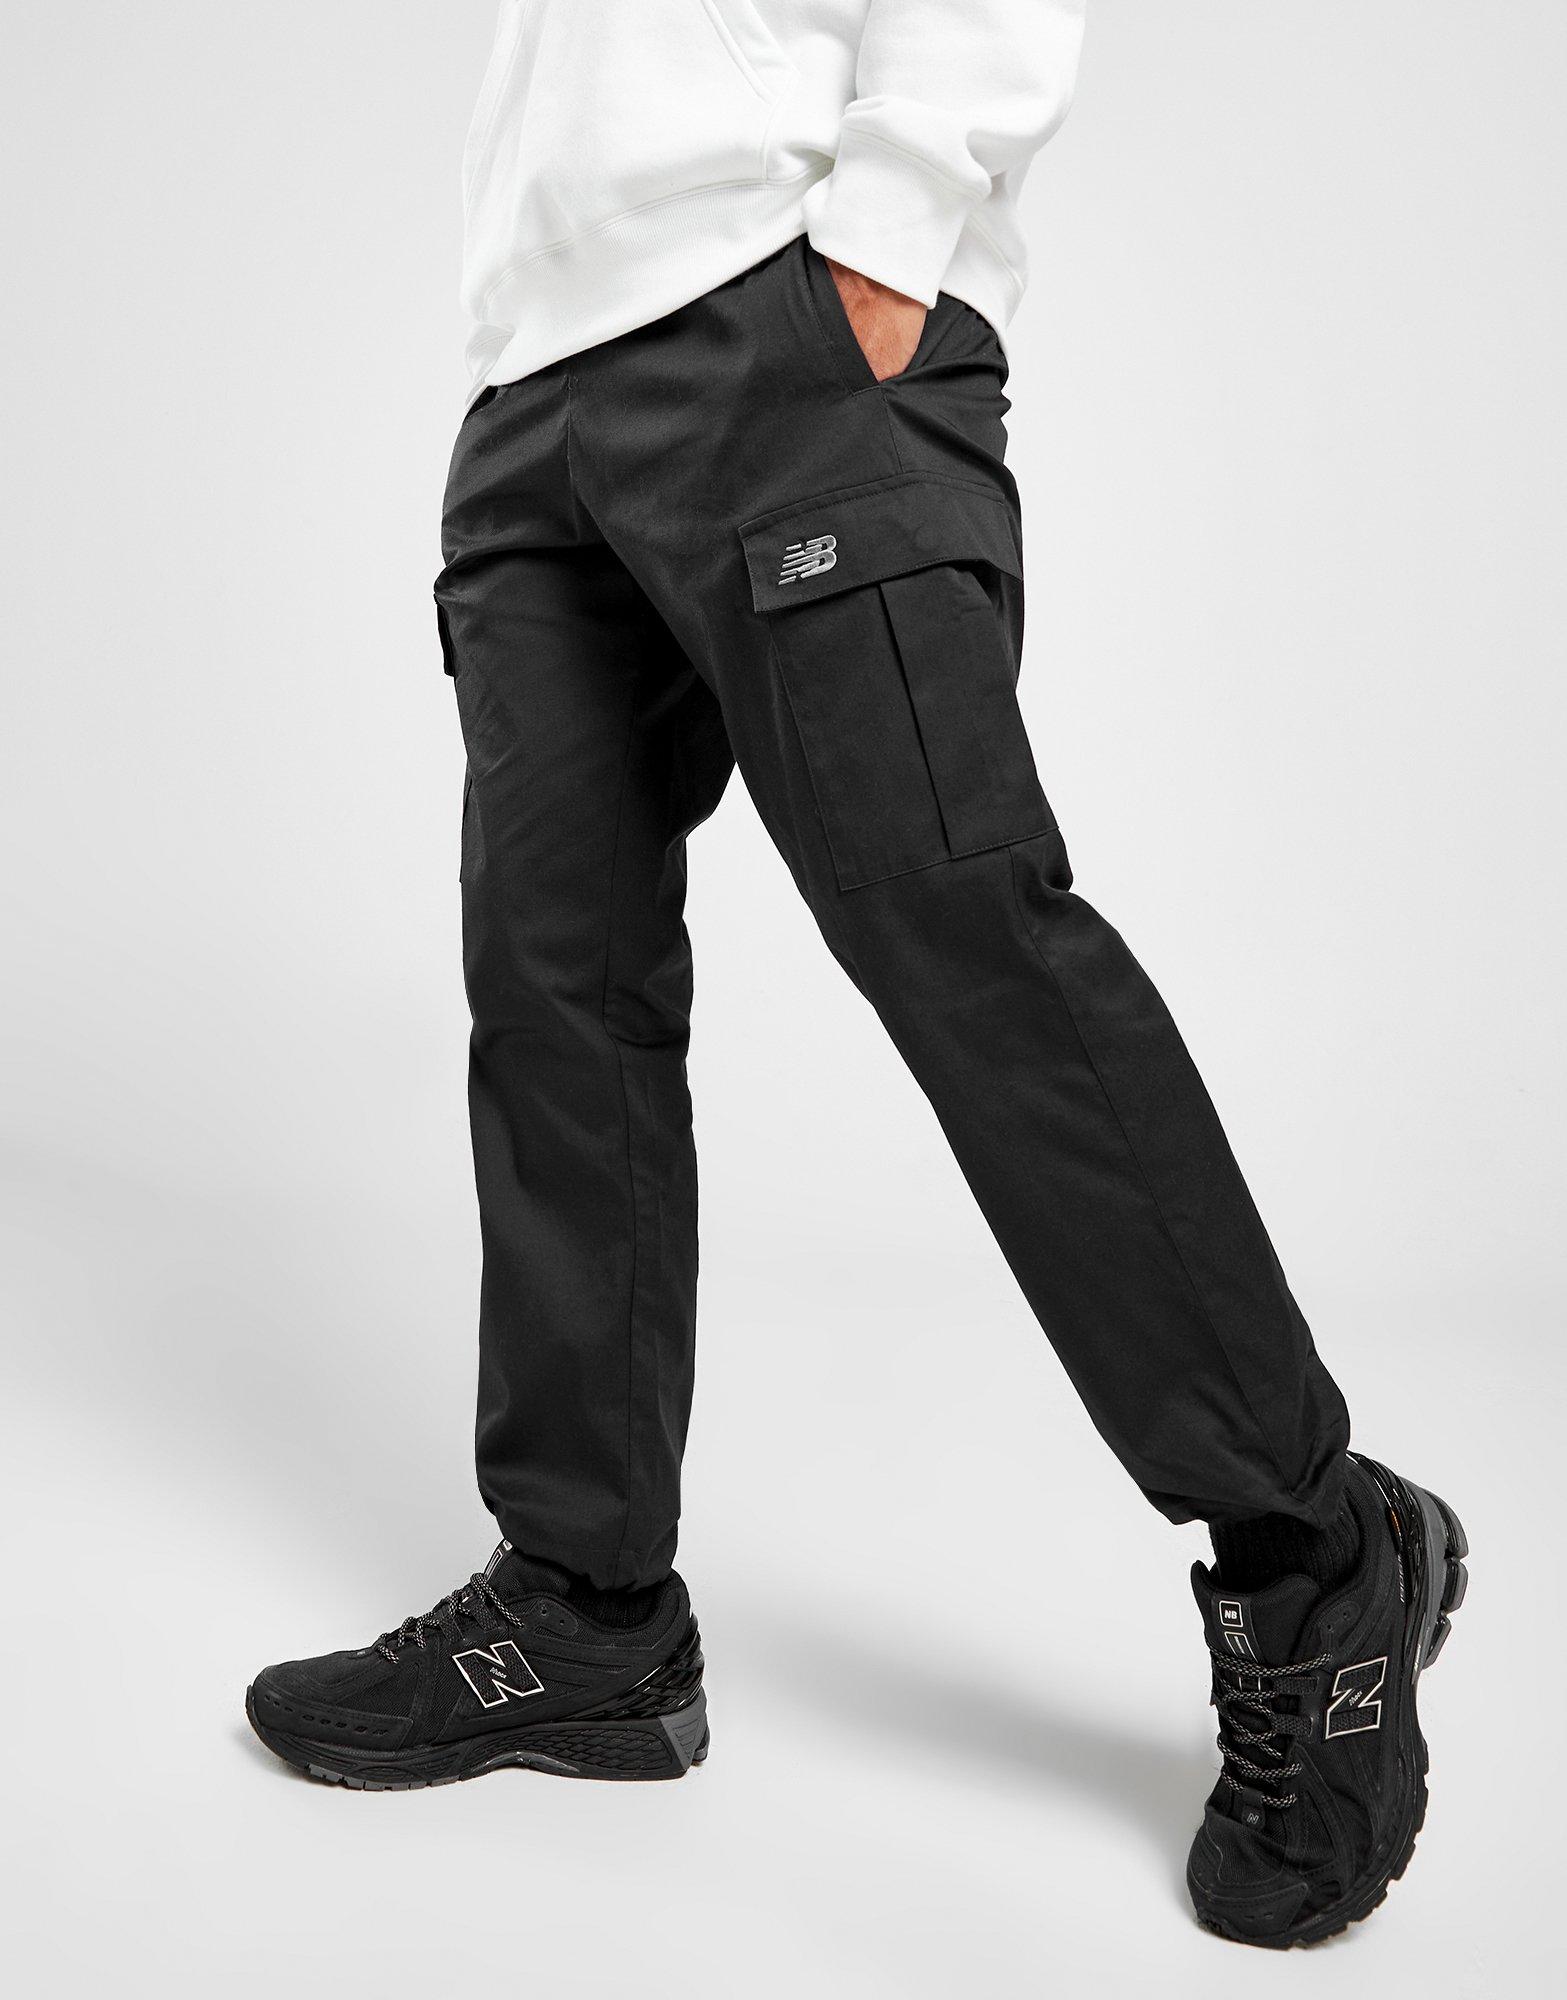 Grey New Balance Combat Cargo Pants